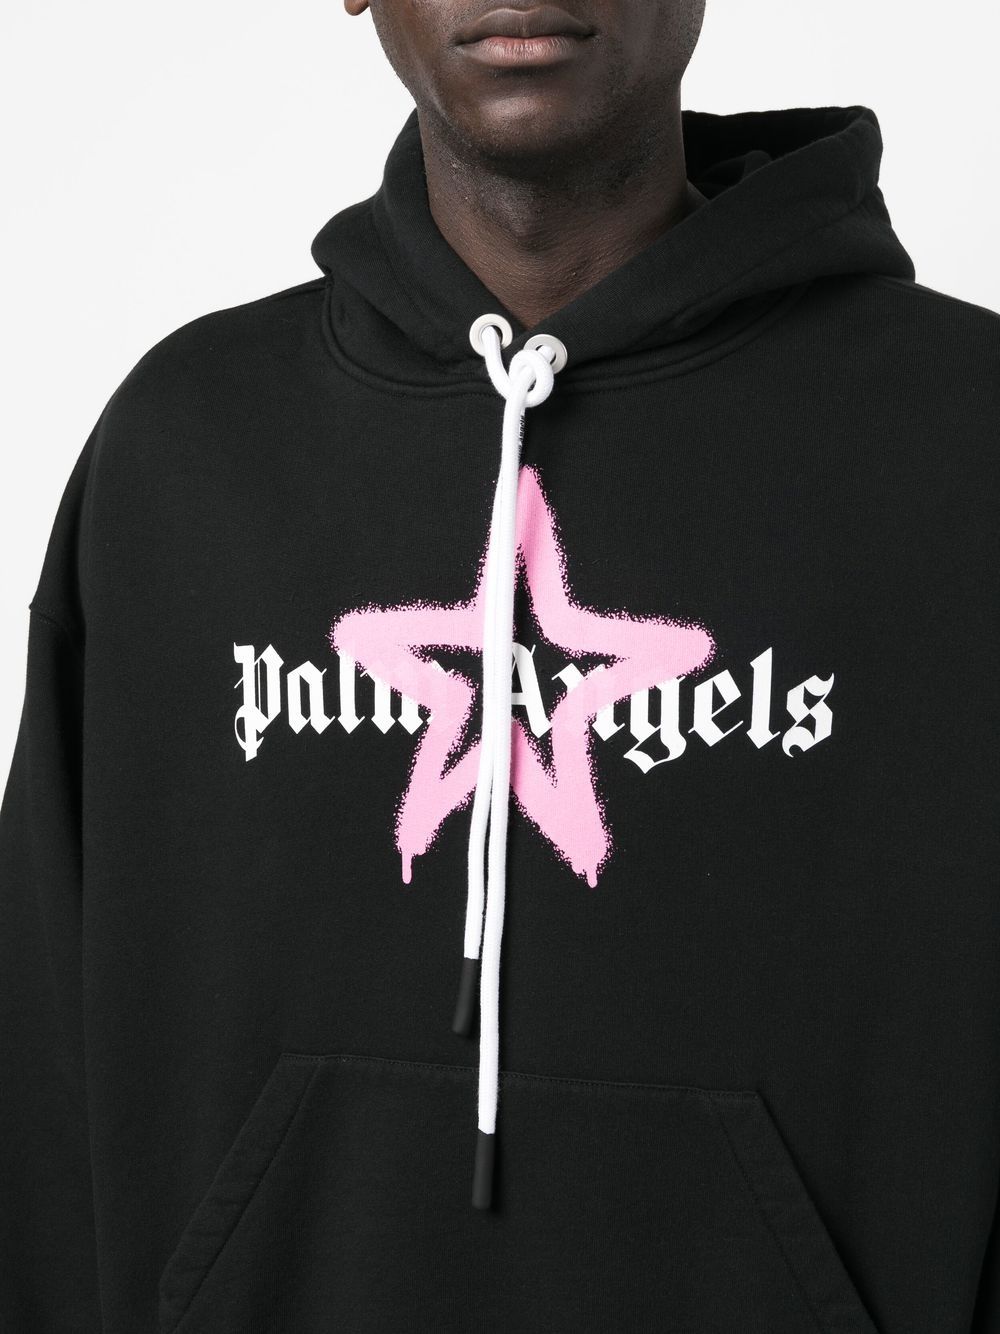 Palm Angels Pink Star Sprayed Print Hoodie in Black